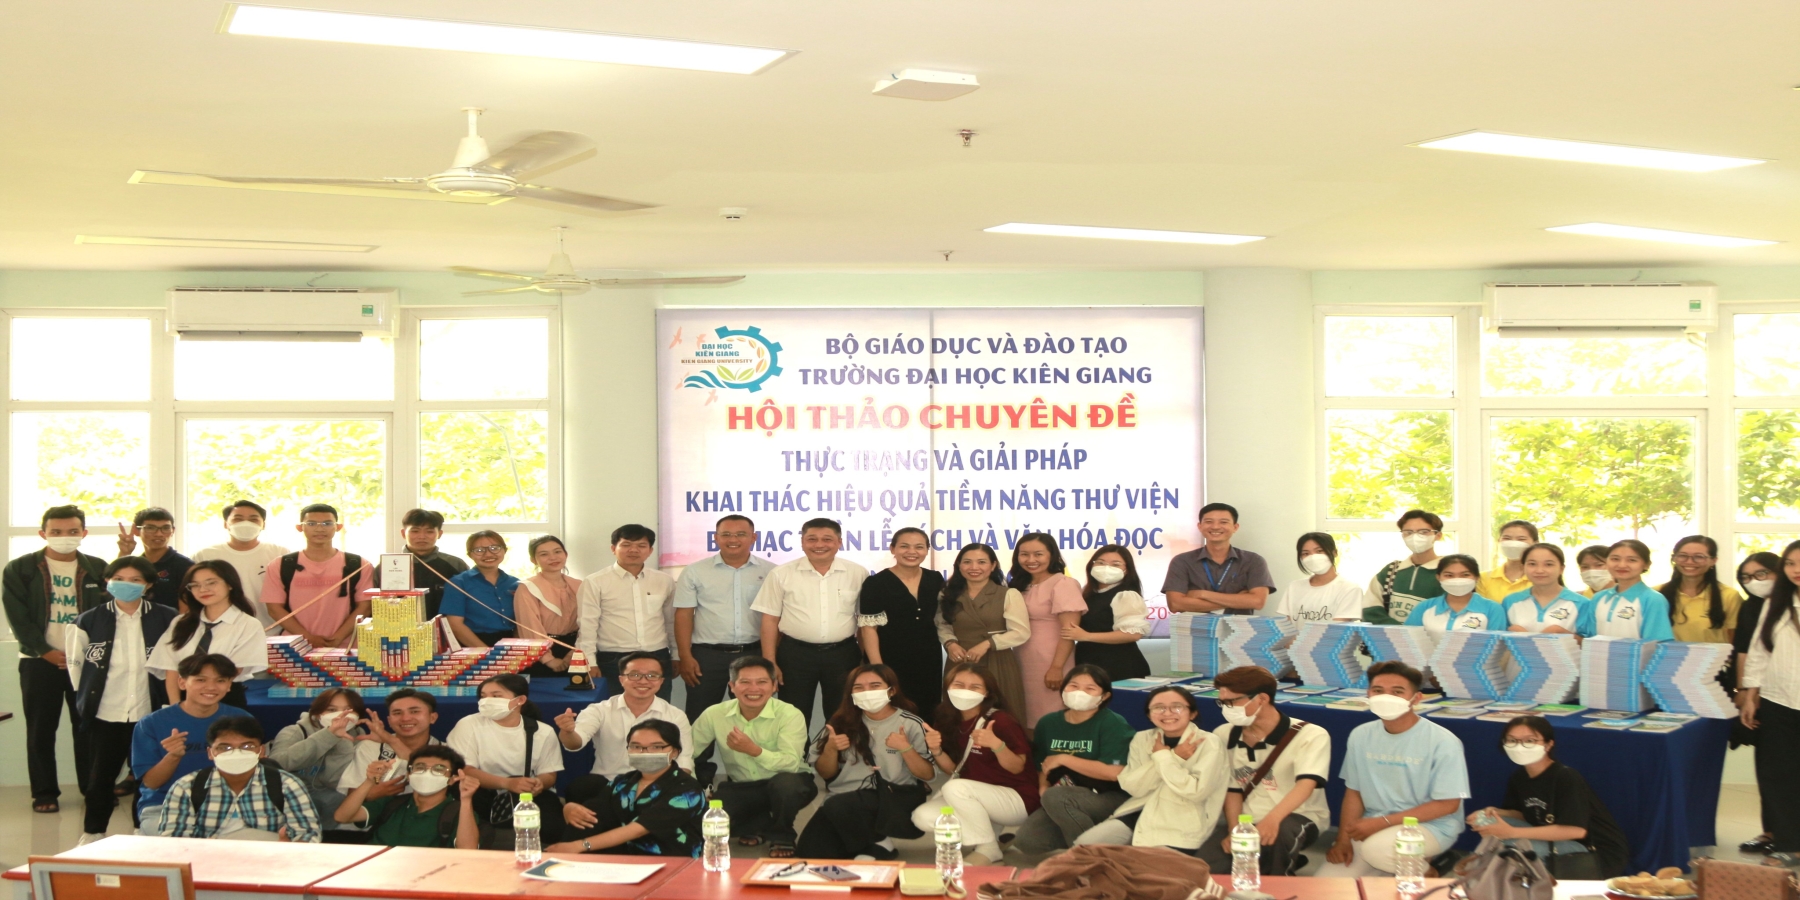 Trường Đại học Kiên Giang sôi nỗi Tuần lễ Sách và Văn hóa đọc Việt Nam